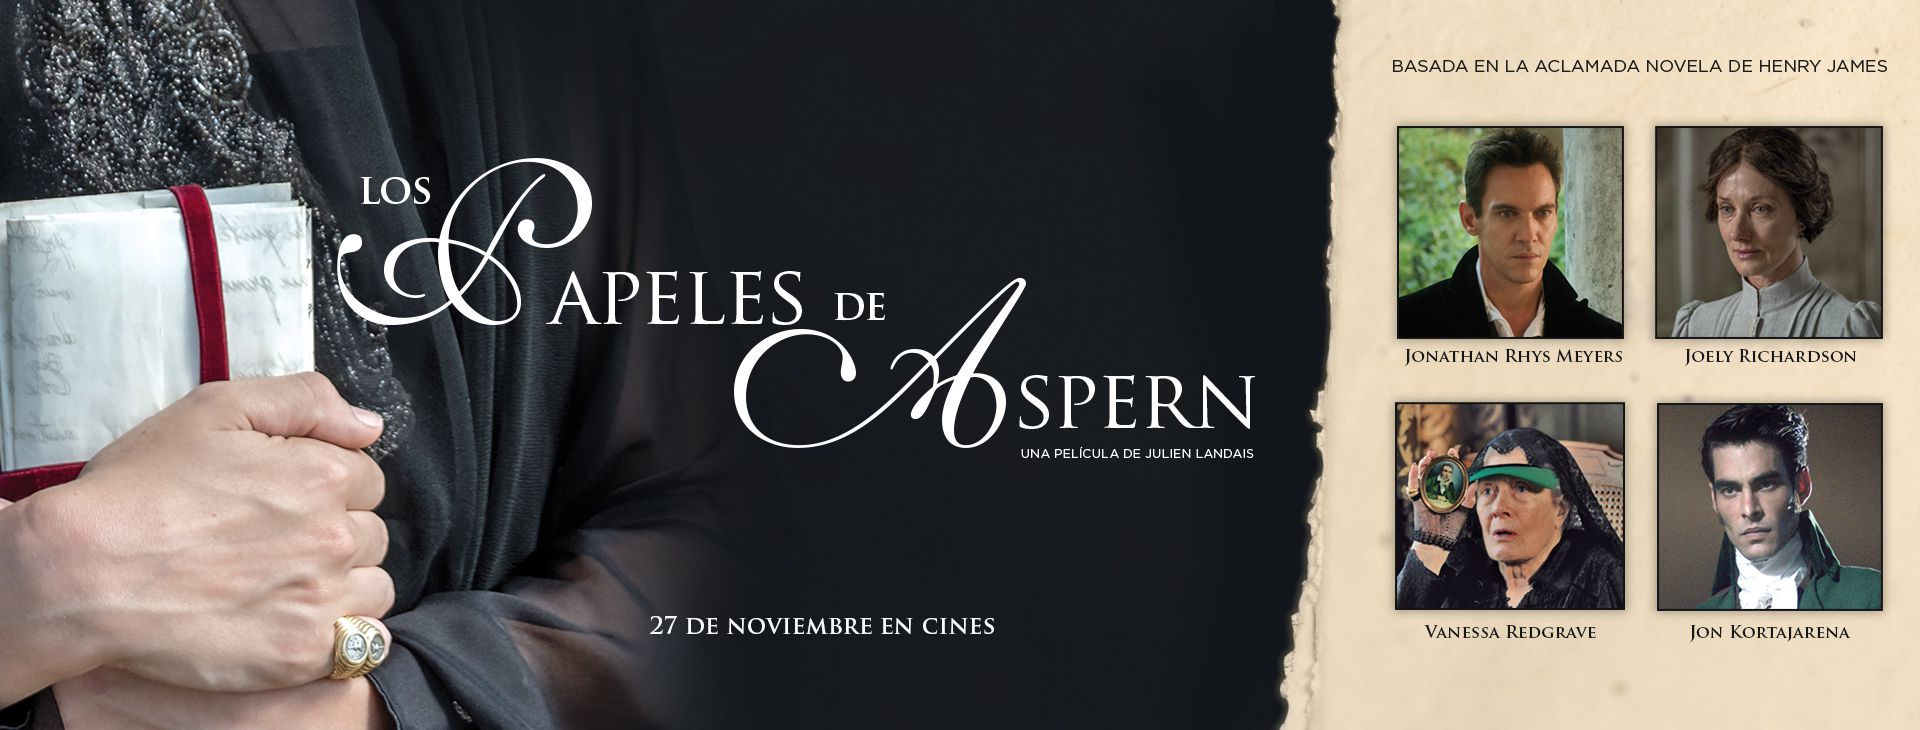 Los papeles de Aspern en Cantones Cines de A Coruña